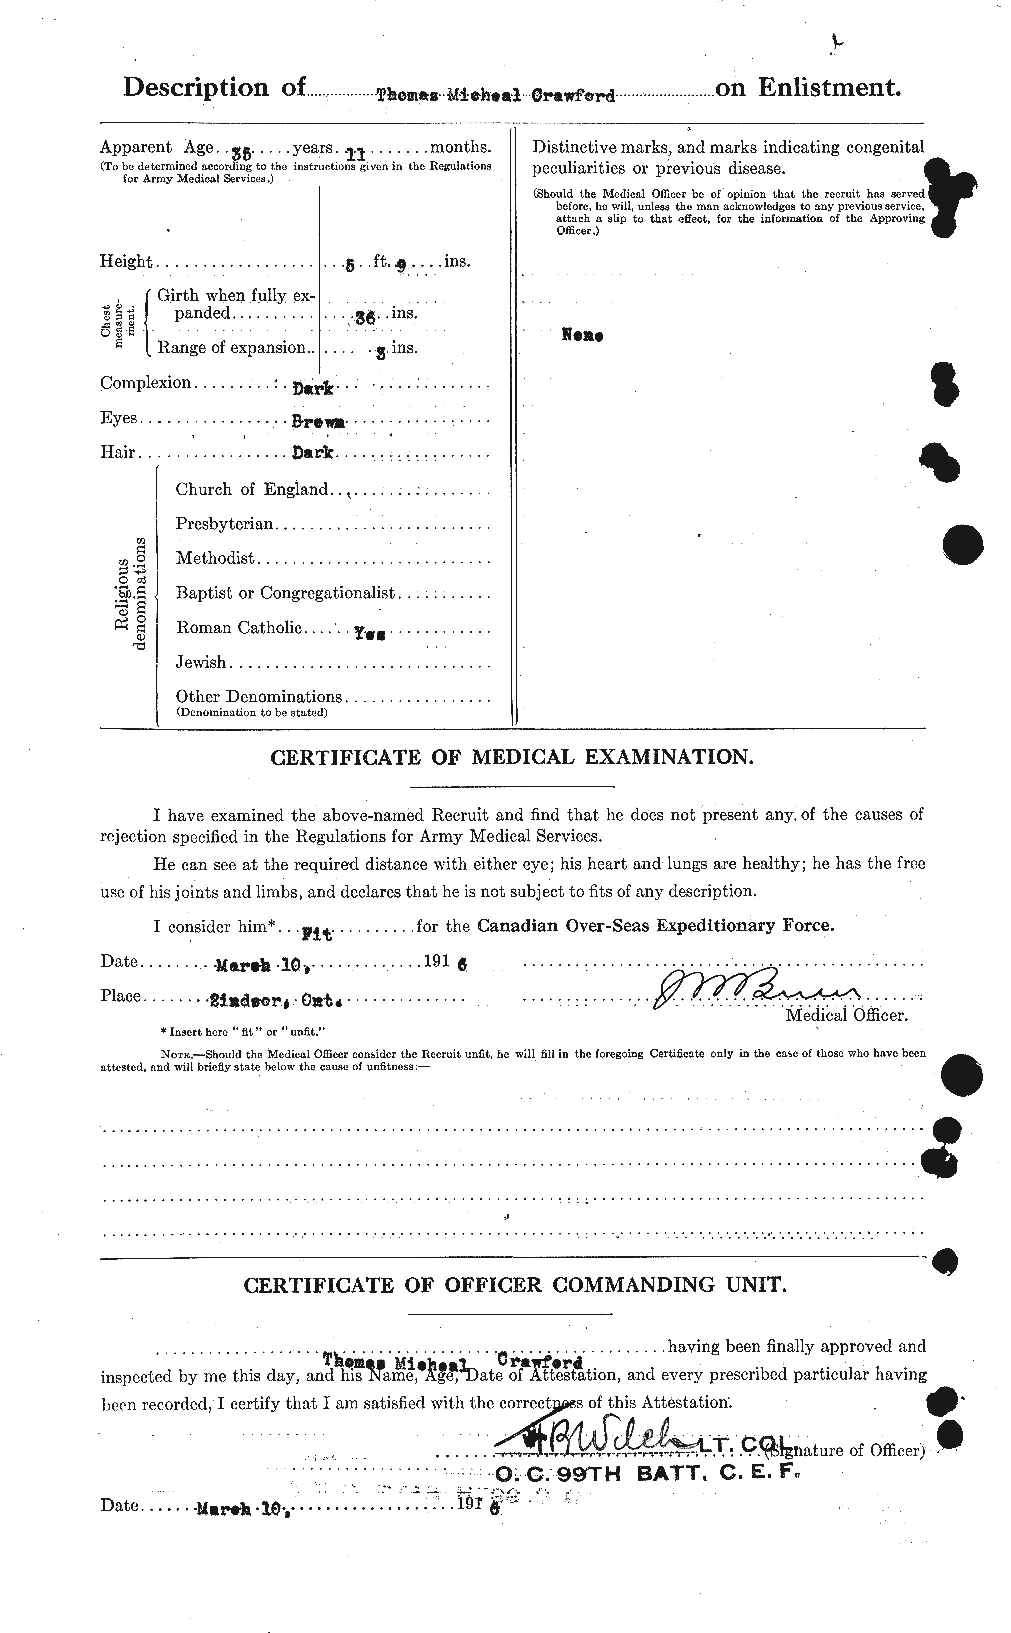 Dossiers du Personnel de la Première Guerre mondiale - CEC 061350b